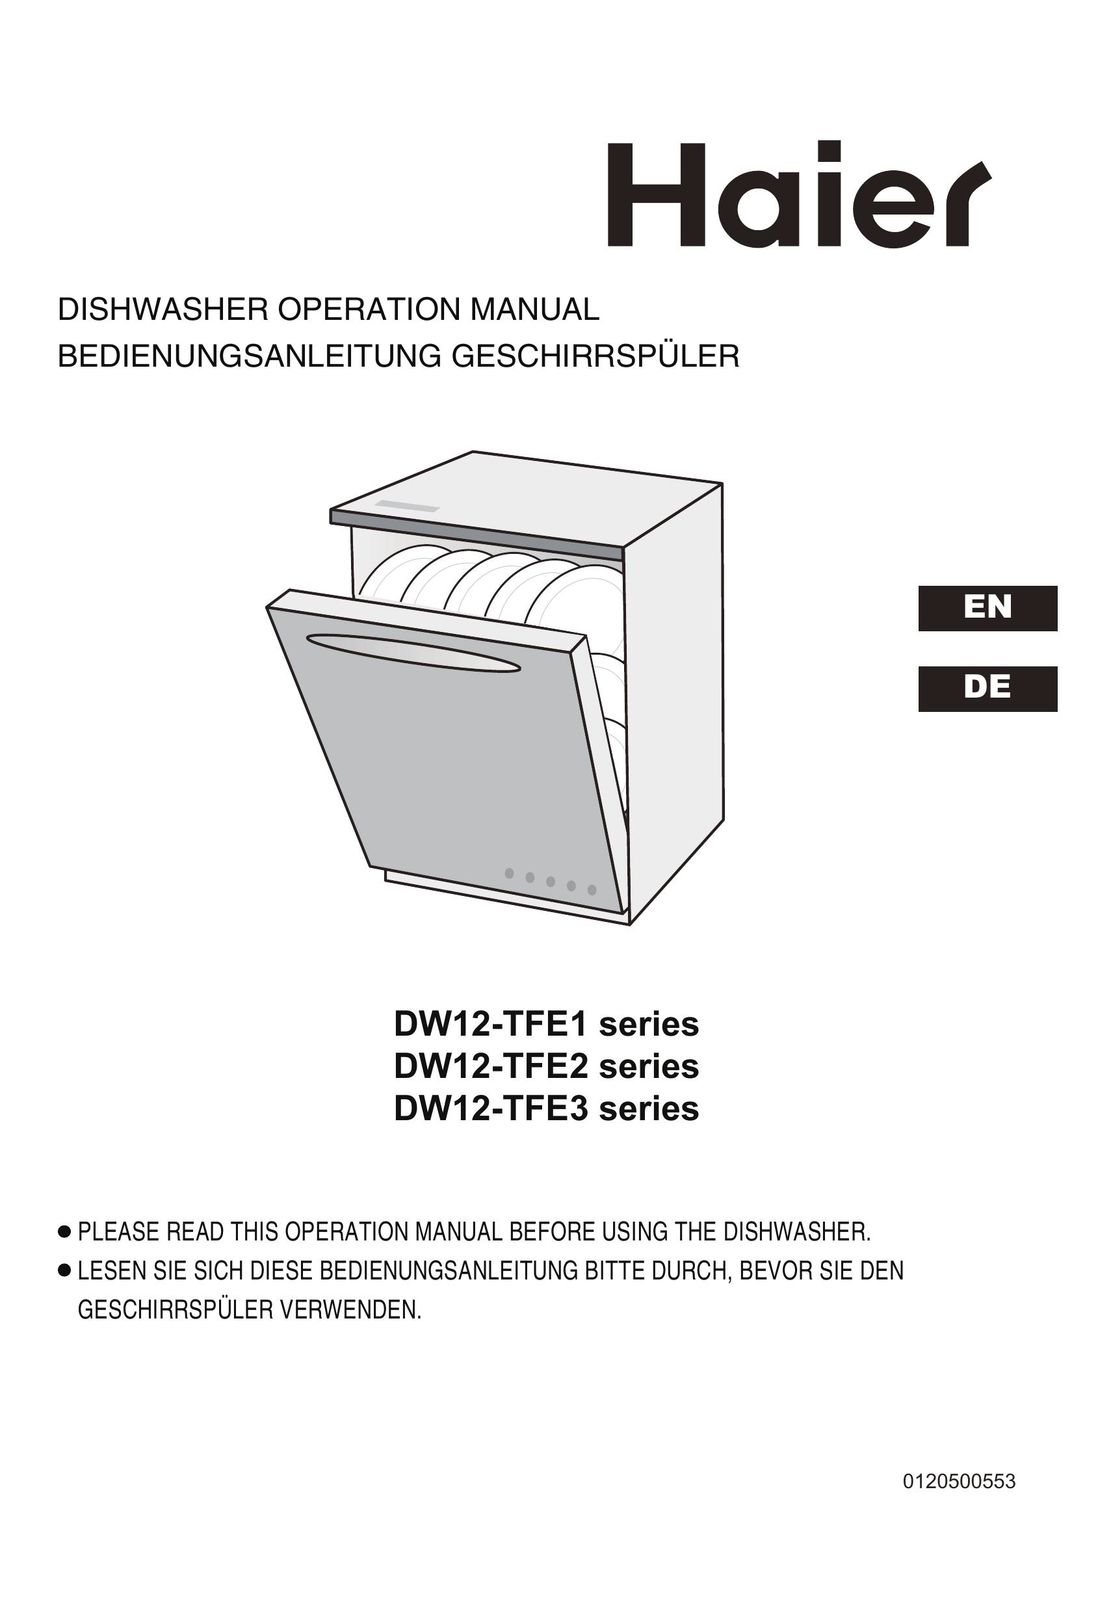 Haier DW12-TFE1 Dishwasher User Manual